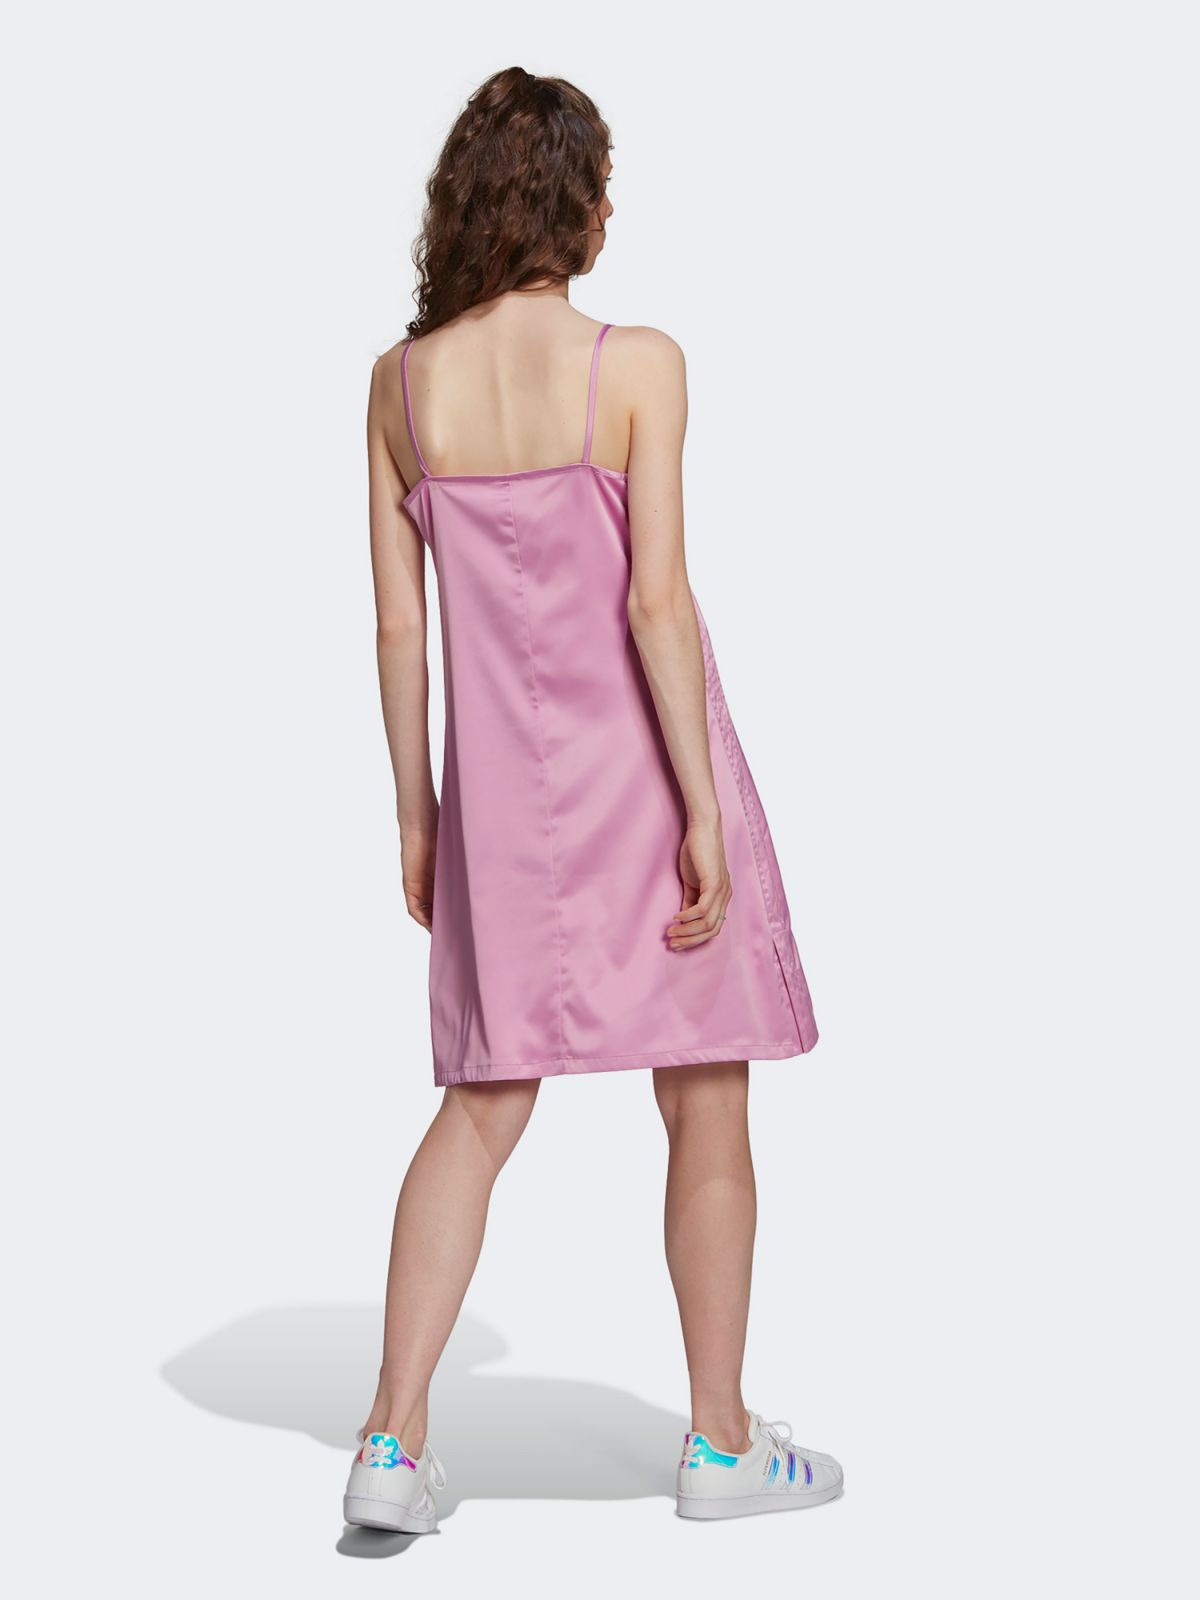  שמלת מיני סטאן עם לוגו של ADIDAS Originals